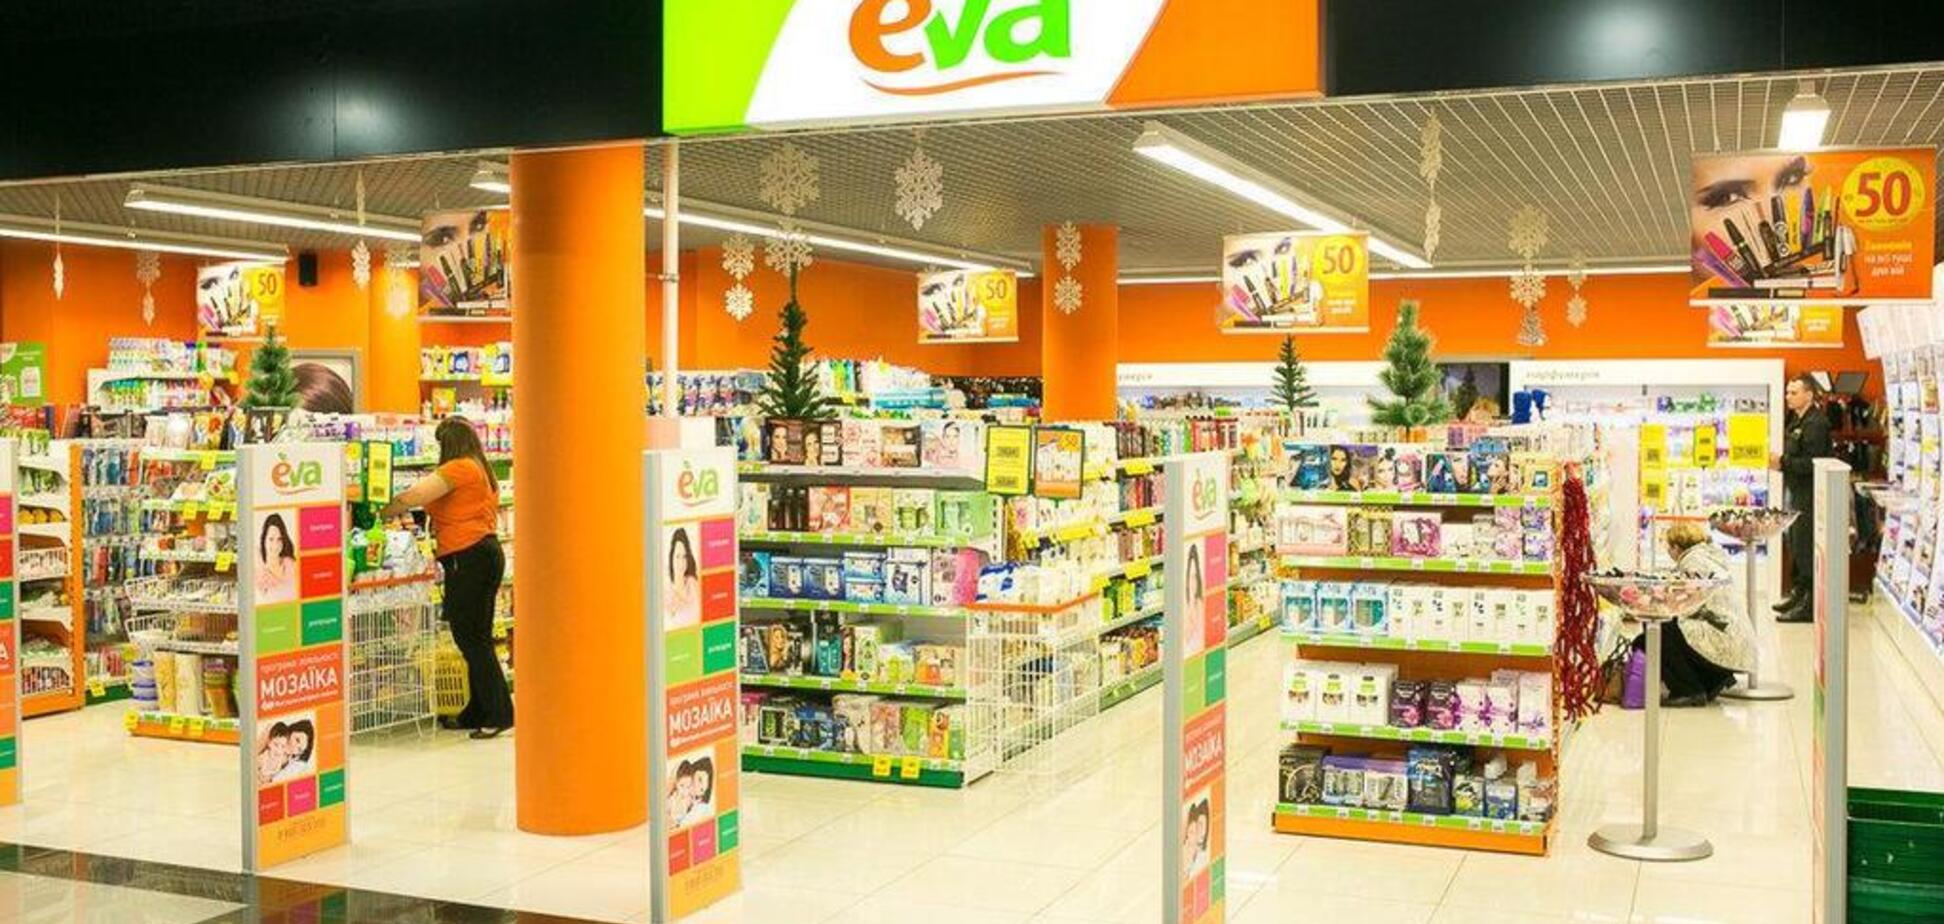 Компания РУШ запускает новый формат магазинов EVA Beauty